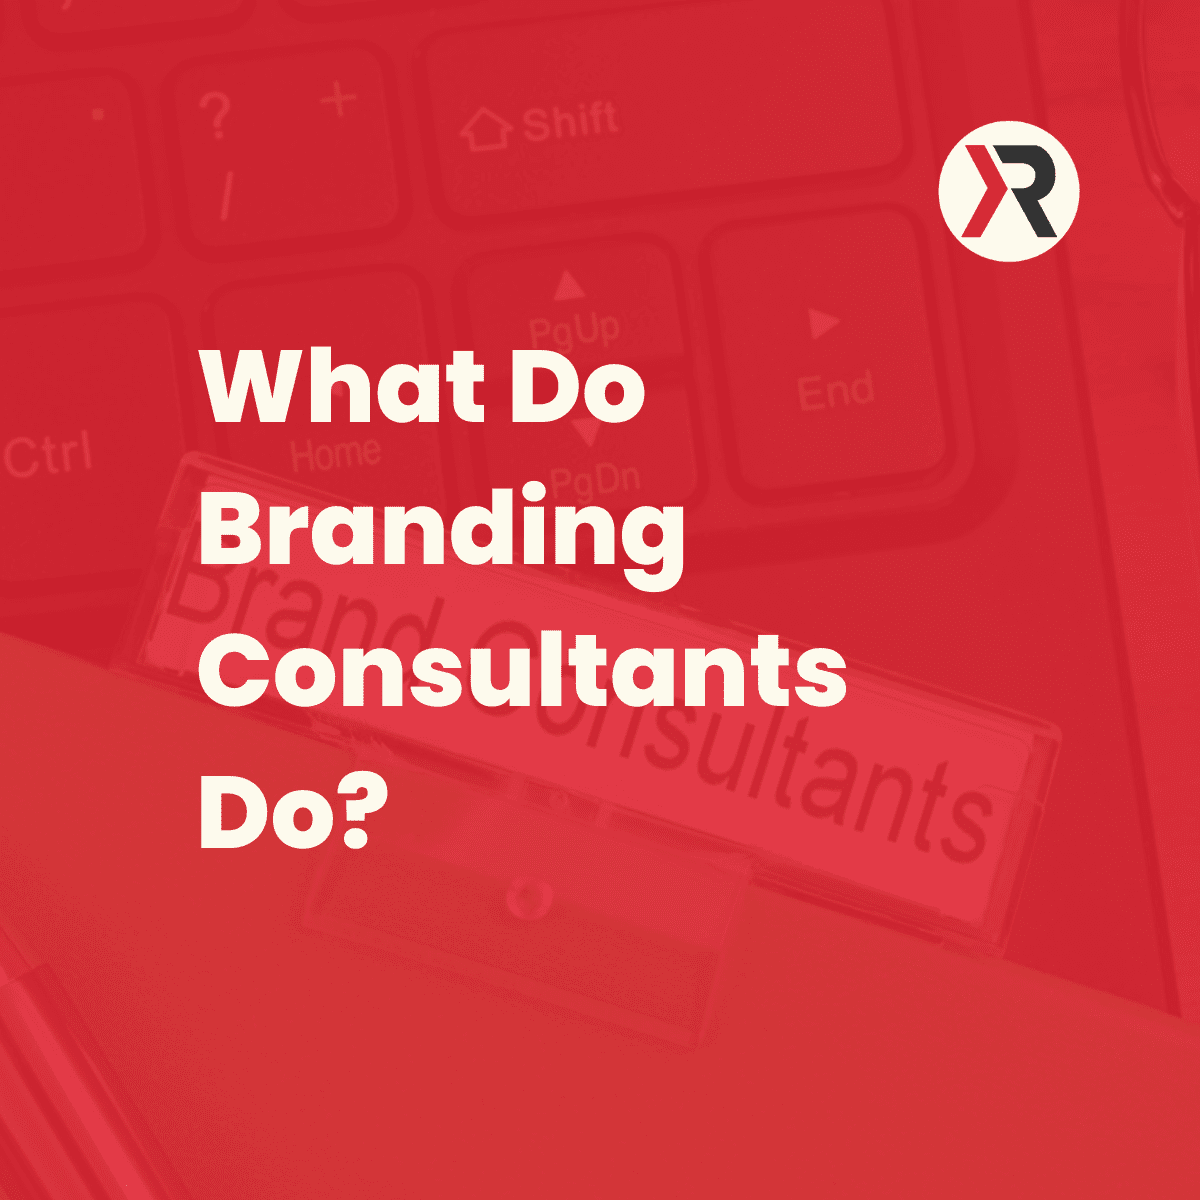 What Do Branding Consultants Do